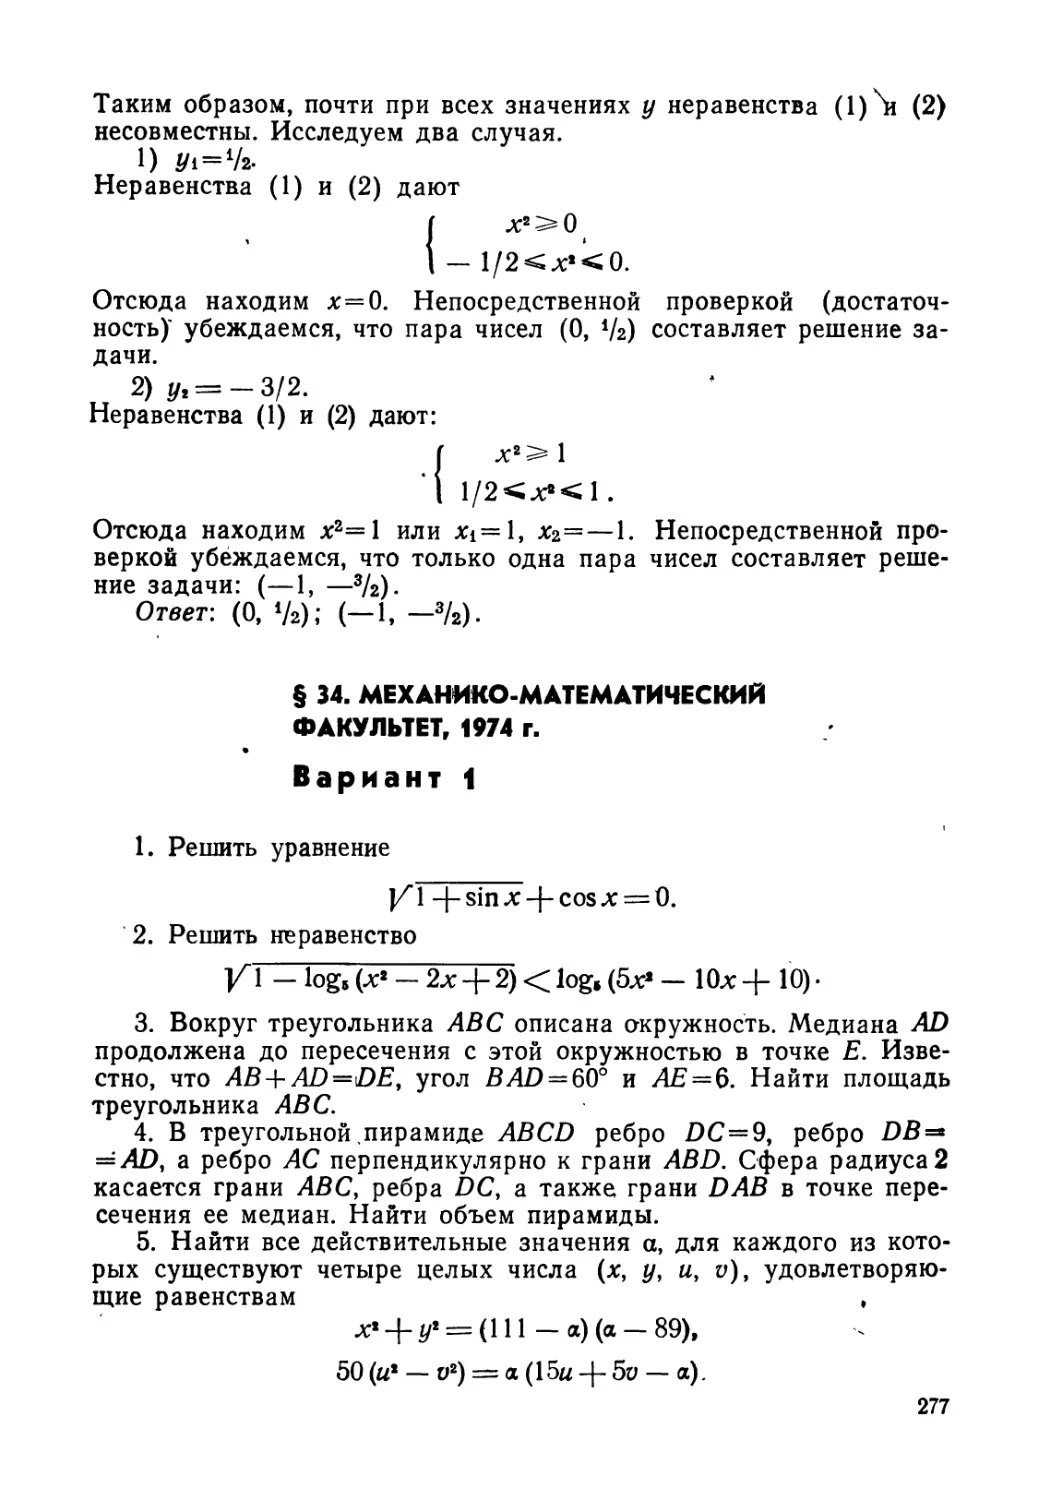 § 34. Механико-математический факультет, 1974 г